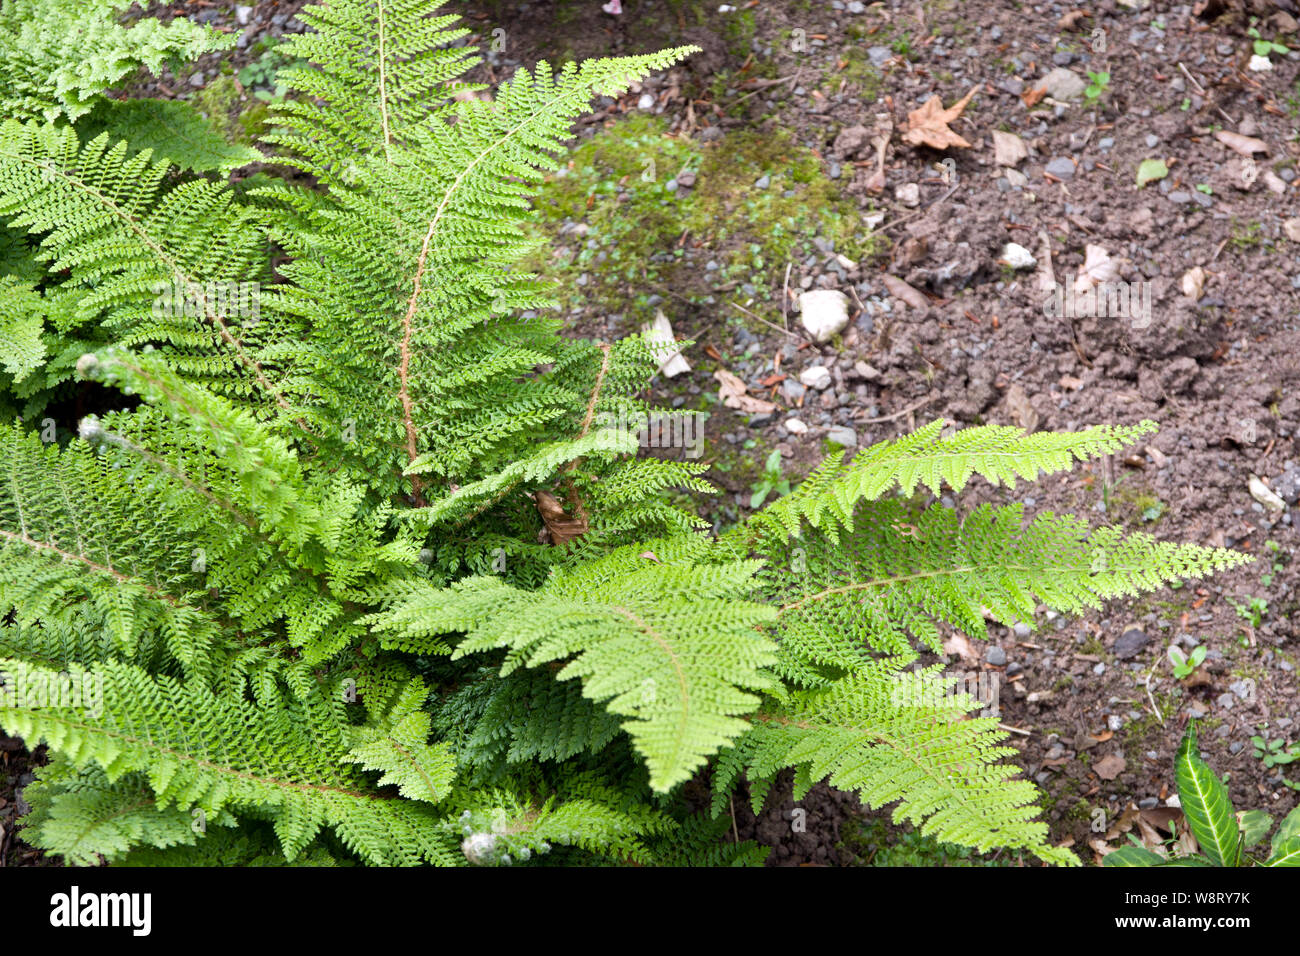 Polystichum setiferum 'Plumosum Densum' soft shield fern Stock Photo